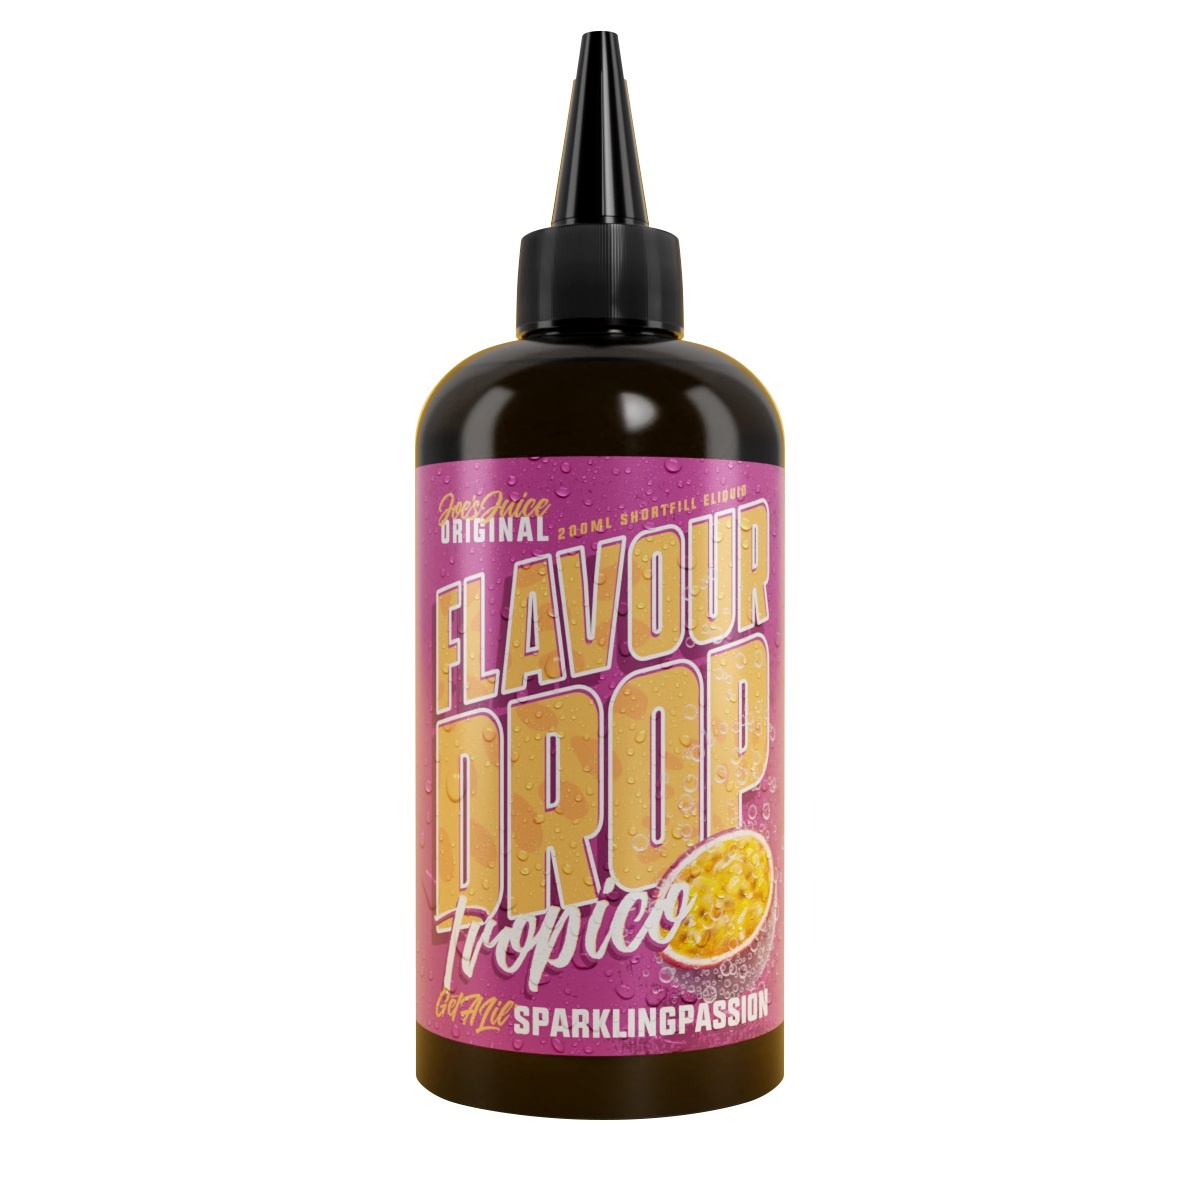 flavour-drop-tropico-200ml-sparkling-passion-